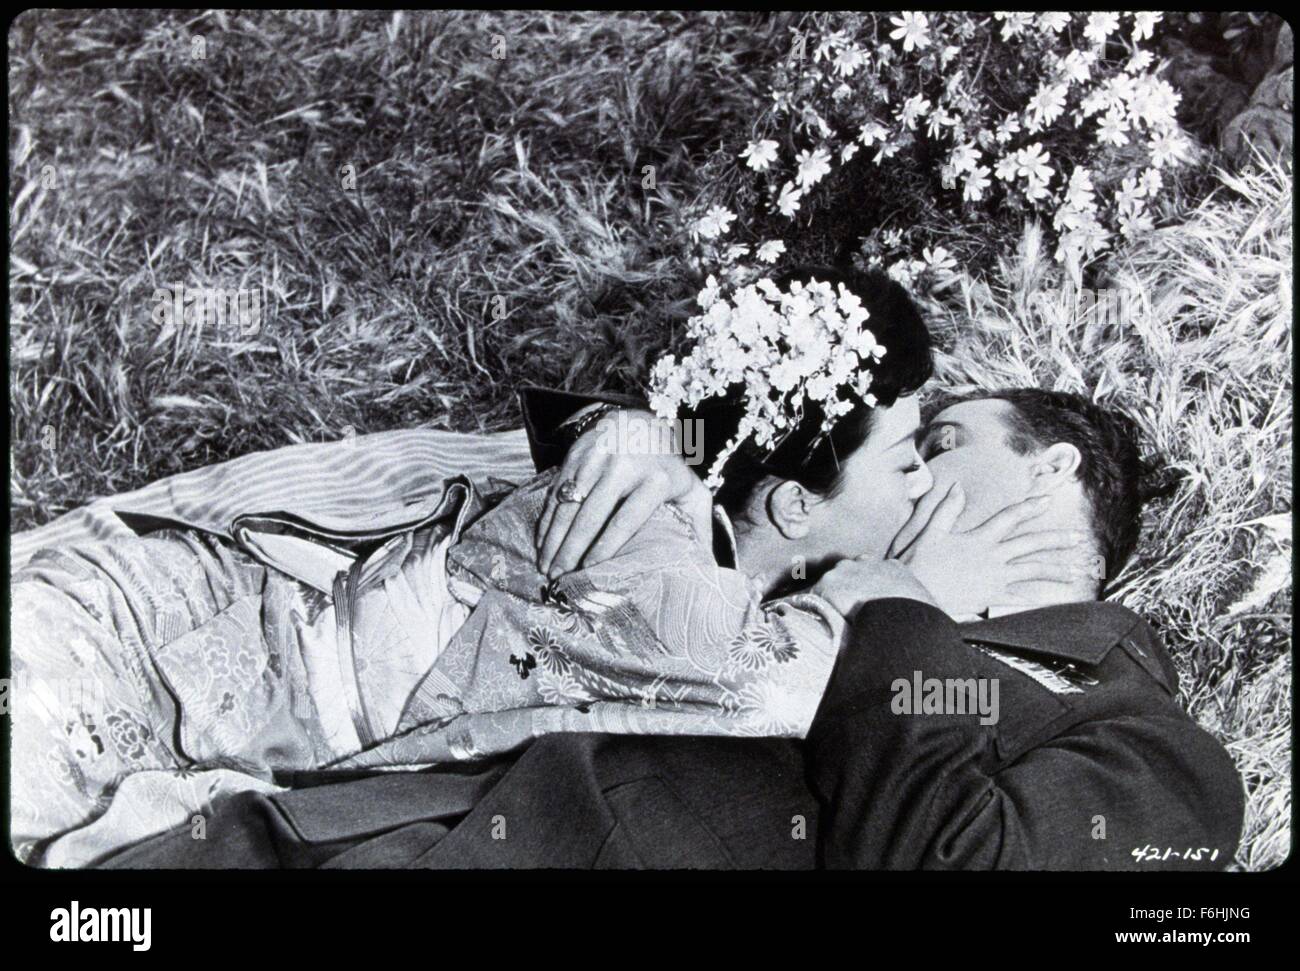 En 1957, el título de la película: SAYONARA, Director: JOSHUA LOGAN, Foto: Marlon Brando, abrazar, besar, JOSHUA LOGAN, ROMANCE. (Crédito de la imagen: SNAP). Foto de stock